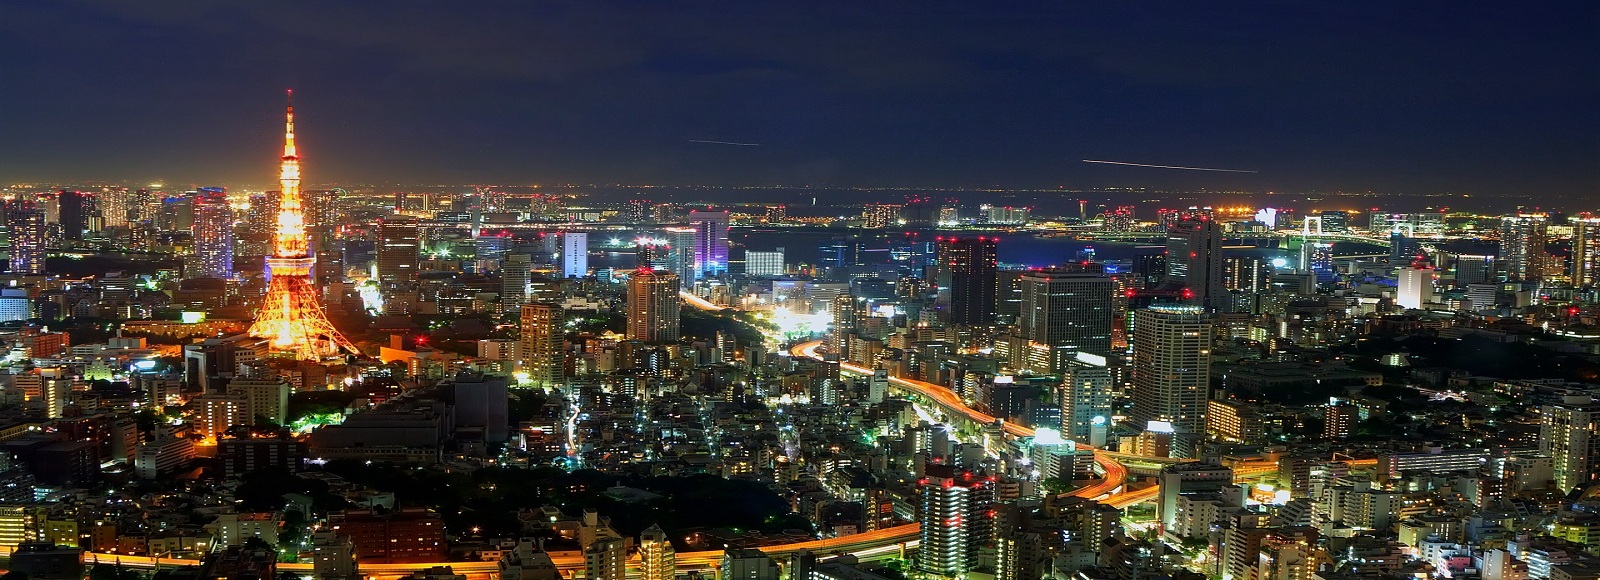 Ofertas de Traslados en Tokio. Traslados económicos en Tokio 